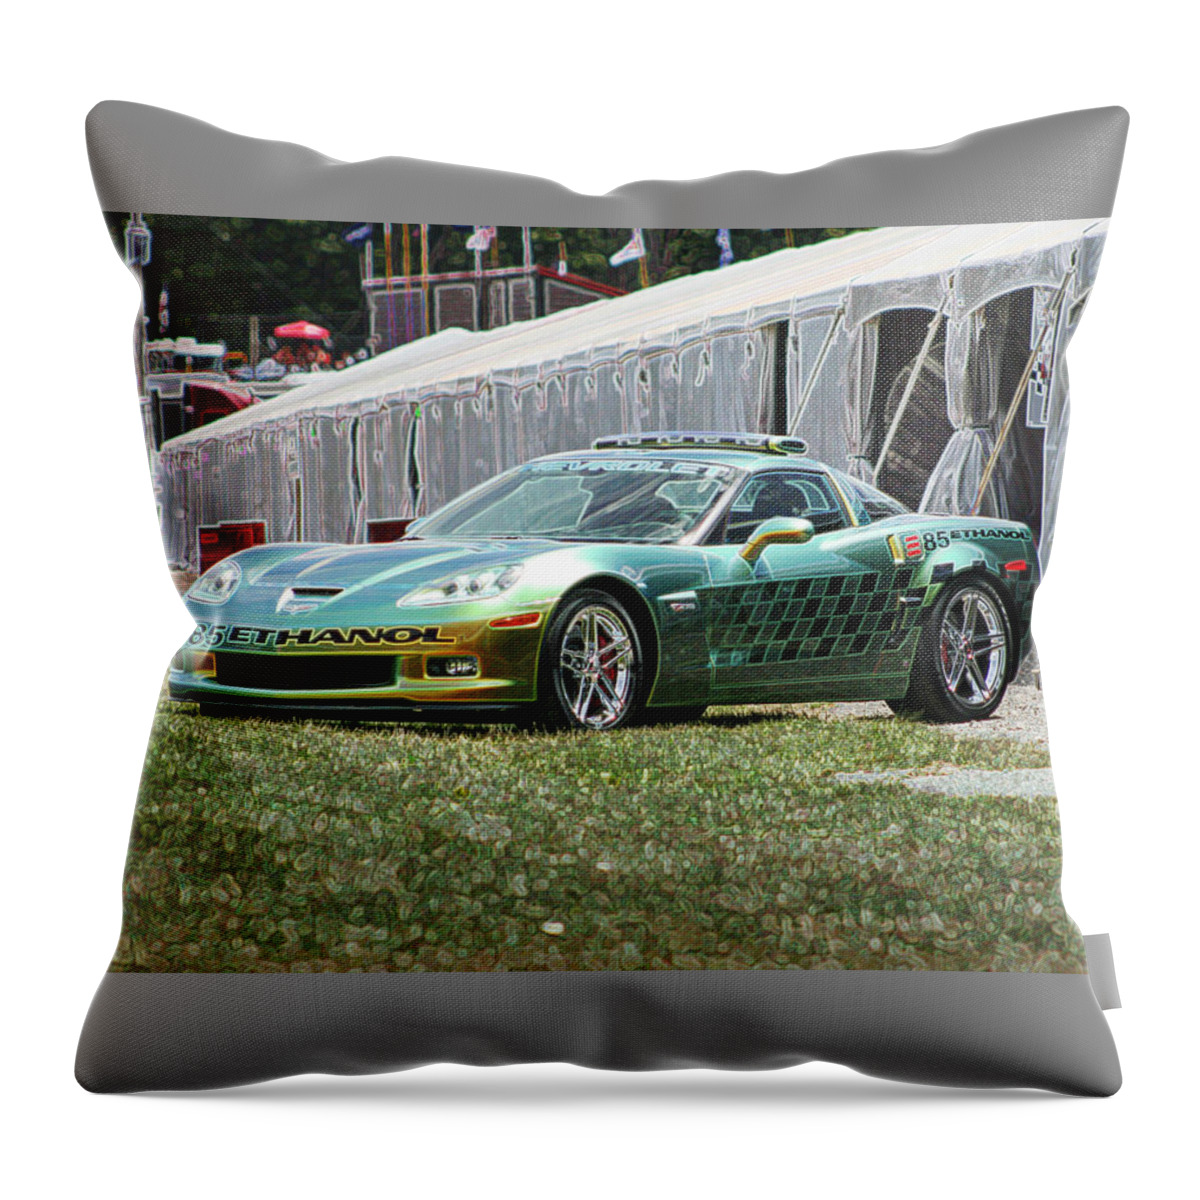 E85 Throw Pillow featuring the digital art E85 Corvette pace car by Darrell Foster